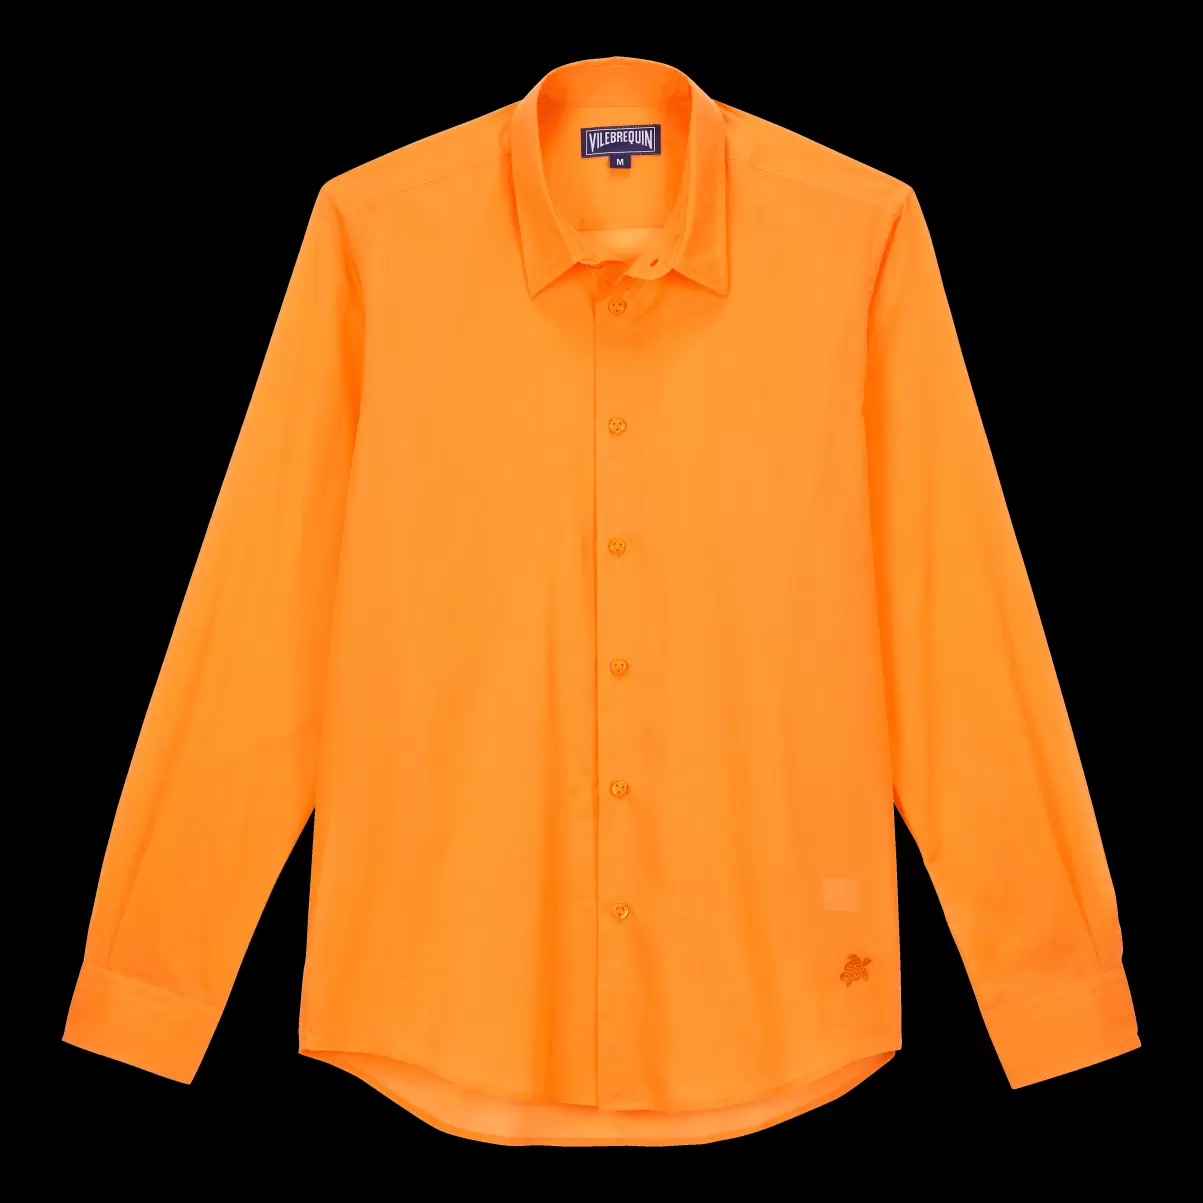 Das Günstigste Leichtes Solid Unisex-Hemd Aus Baumwollvoile Vilebrequin Karotte / Orange Herren Shirts - 3